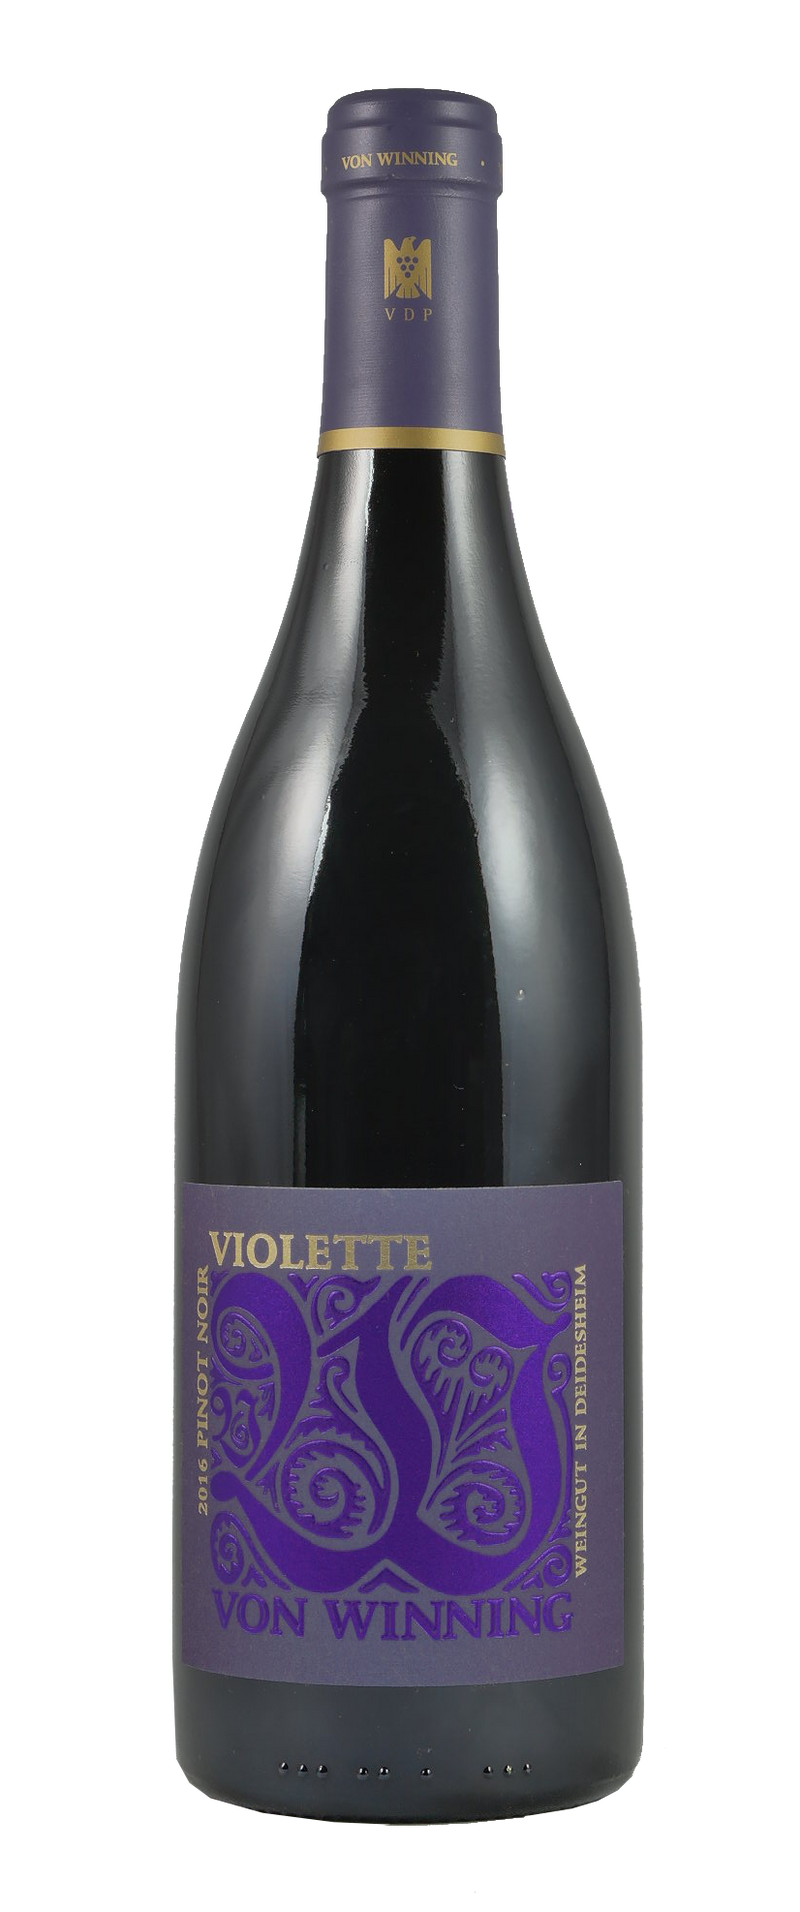 Von Winning Violette Pinot Noir 2017